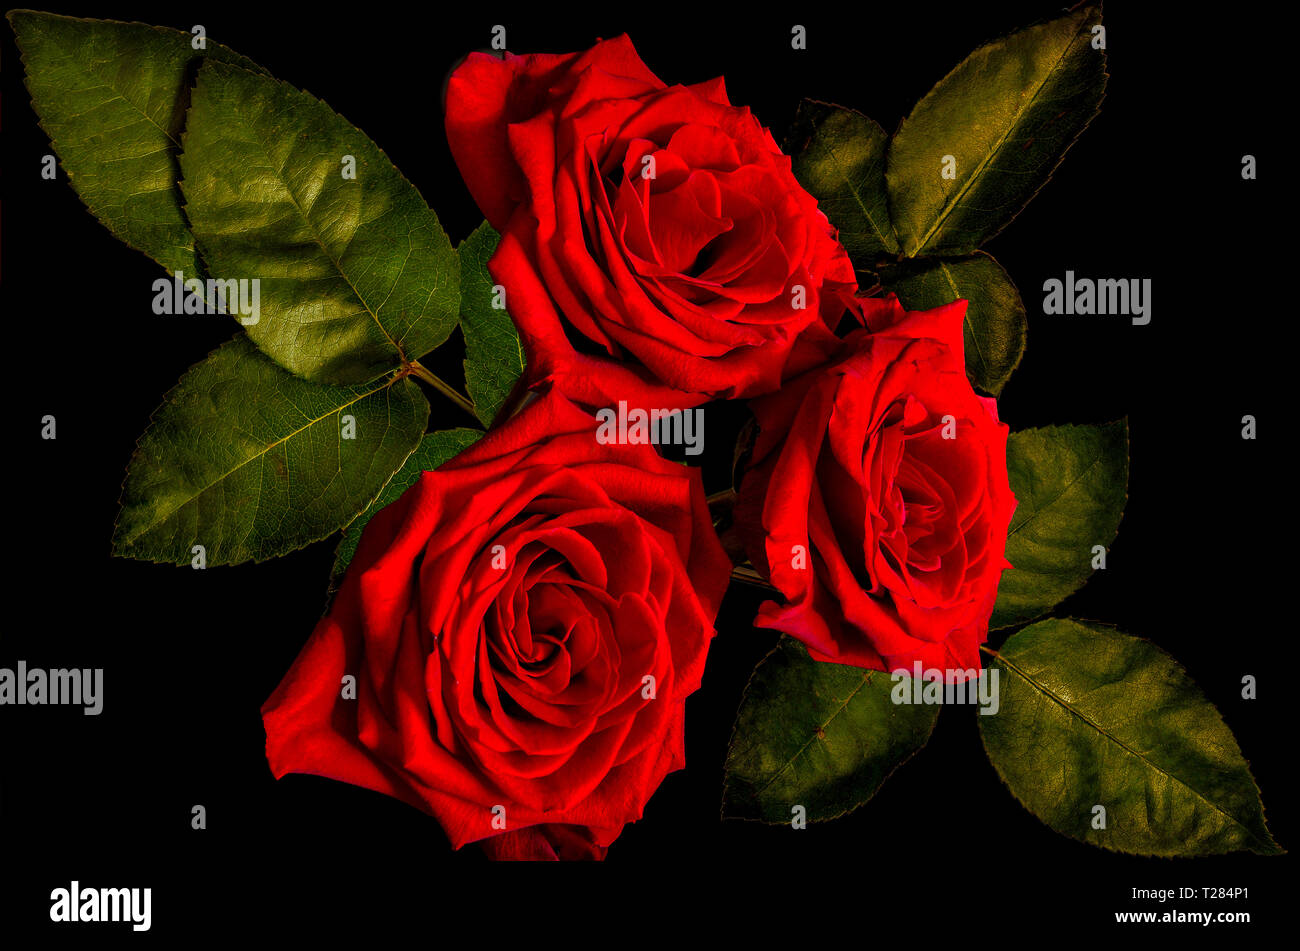 Vintage floral background mit drei dunkel-rote Rosen Bouquet und grüne Blätter, auf schwarzem Hintergrund isoliert. Konzept der Liebe, Leidenschaft oder traurig. Br Stockfoto